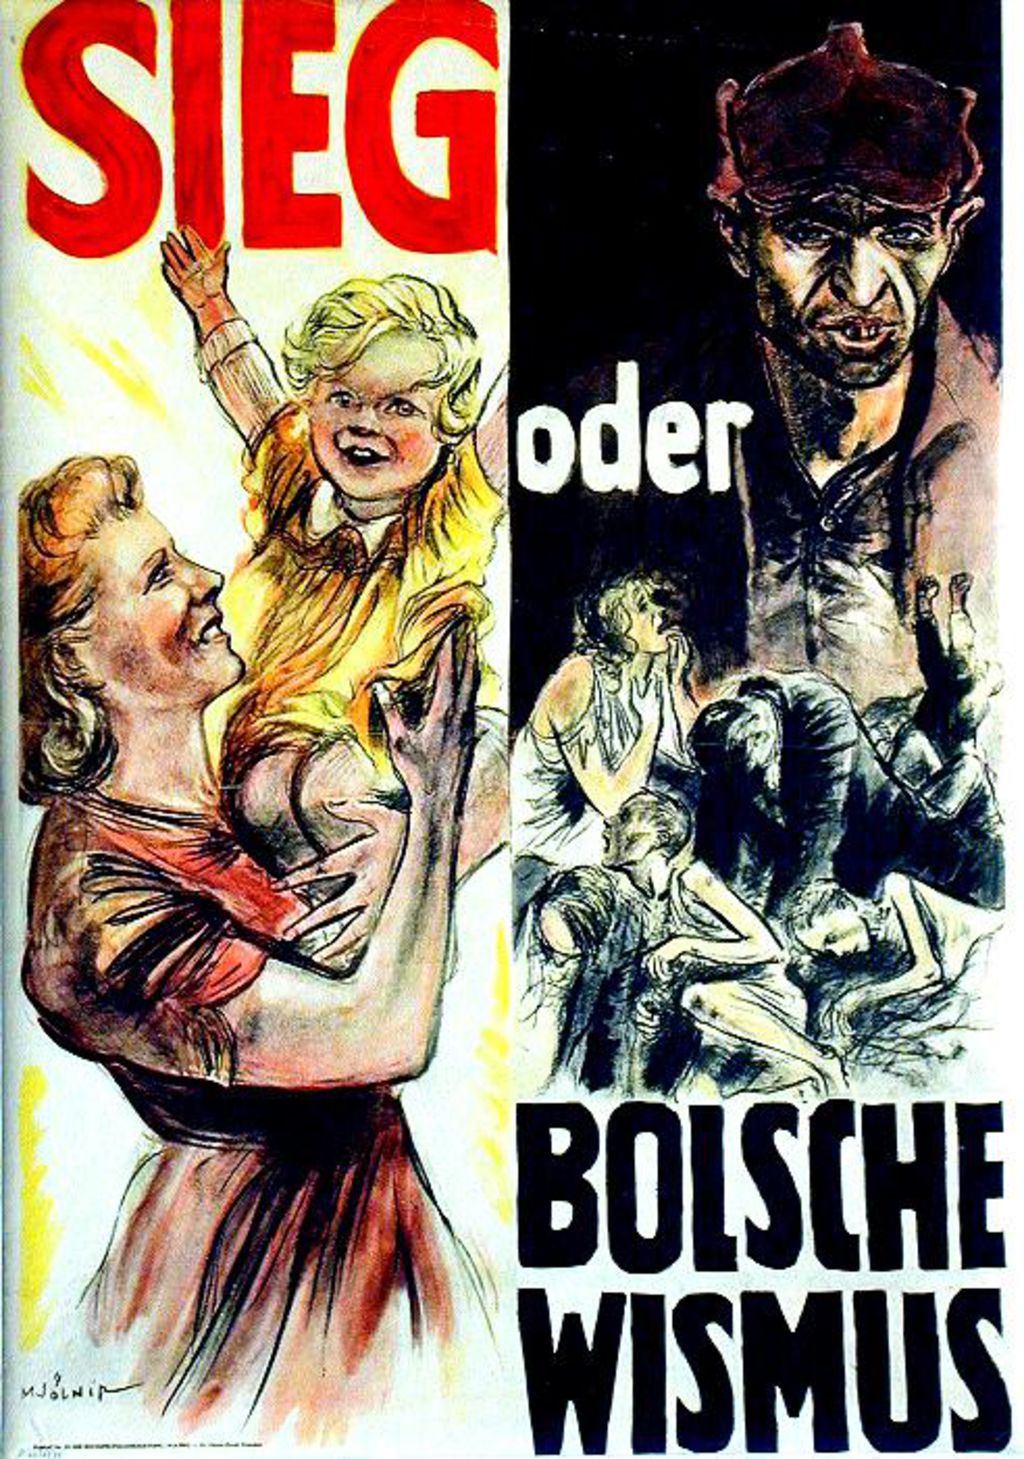 Exponat: Plakat: "Sieg oder Bolschewismus", 1943